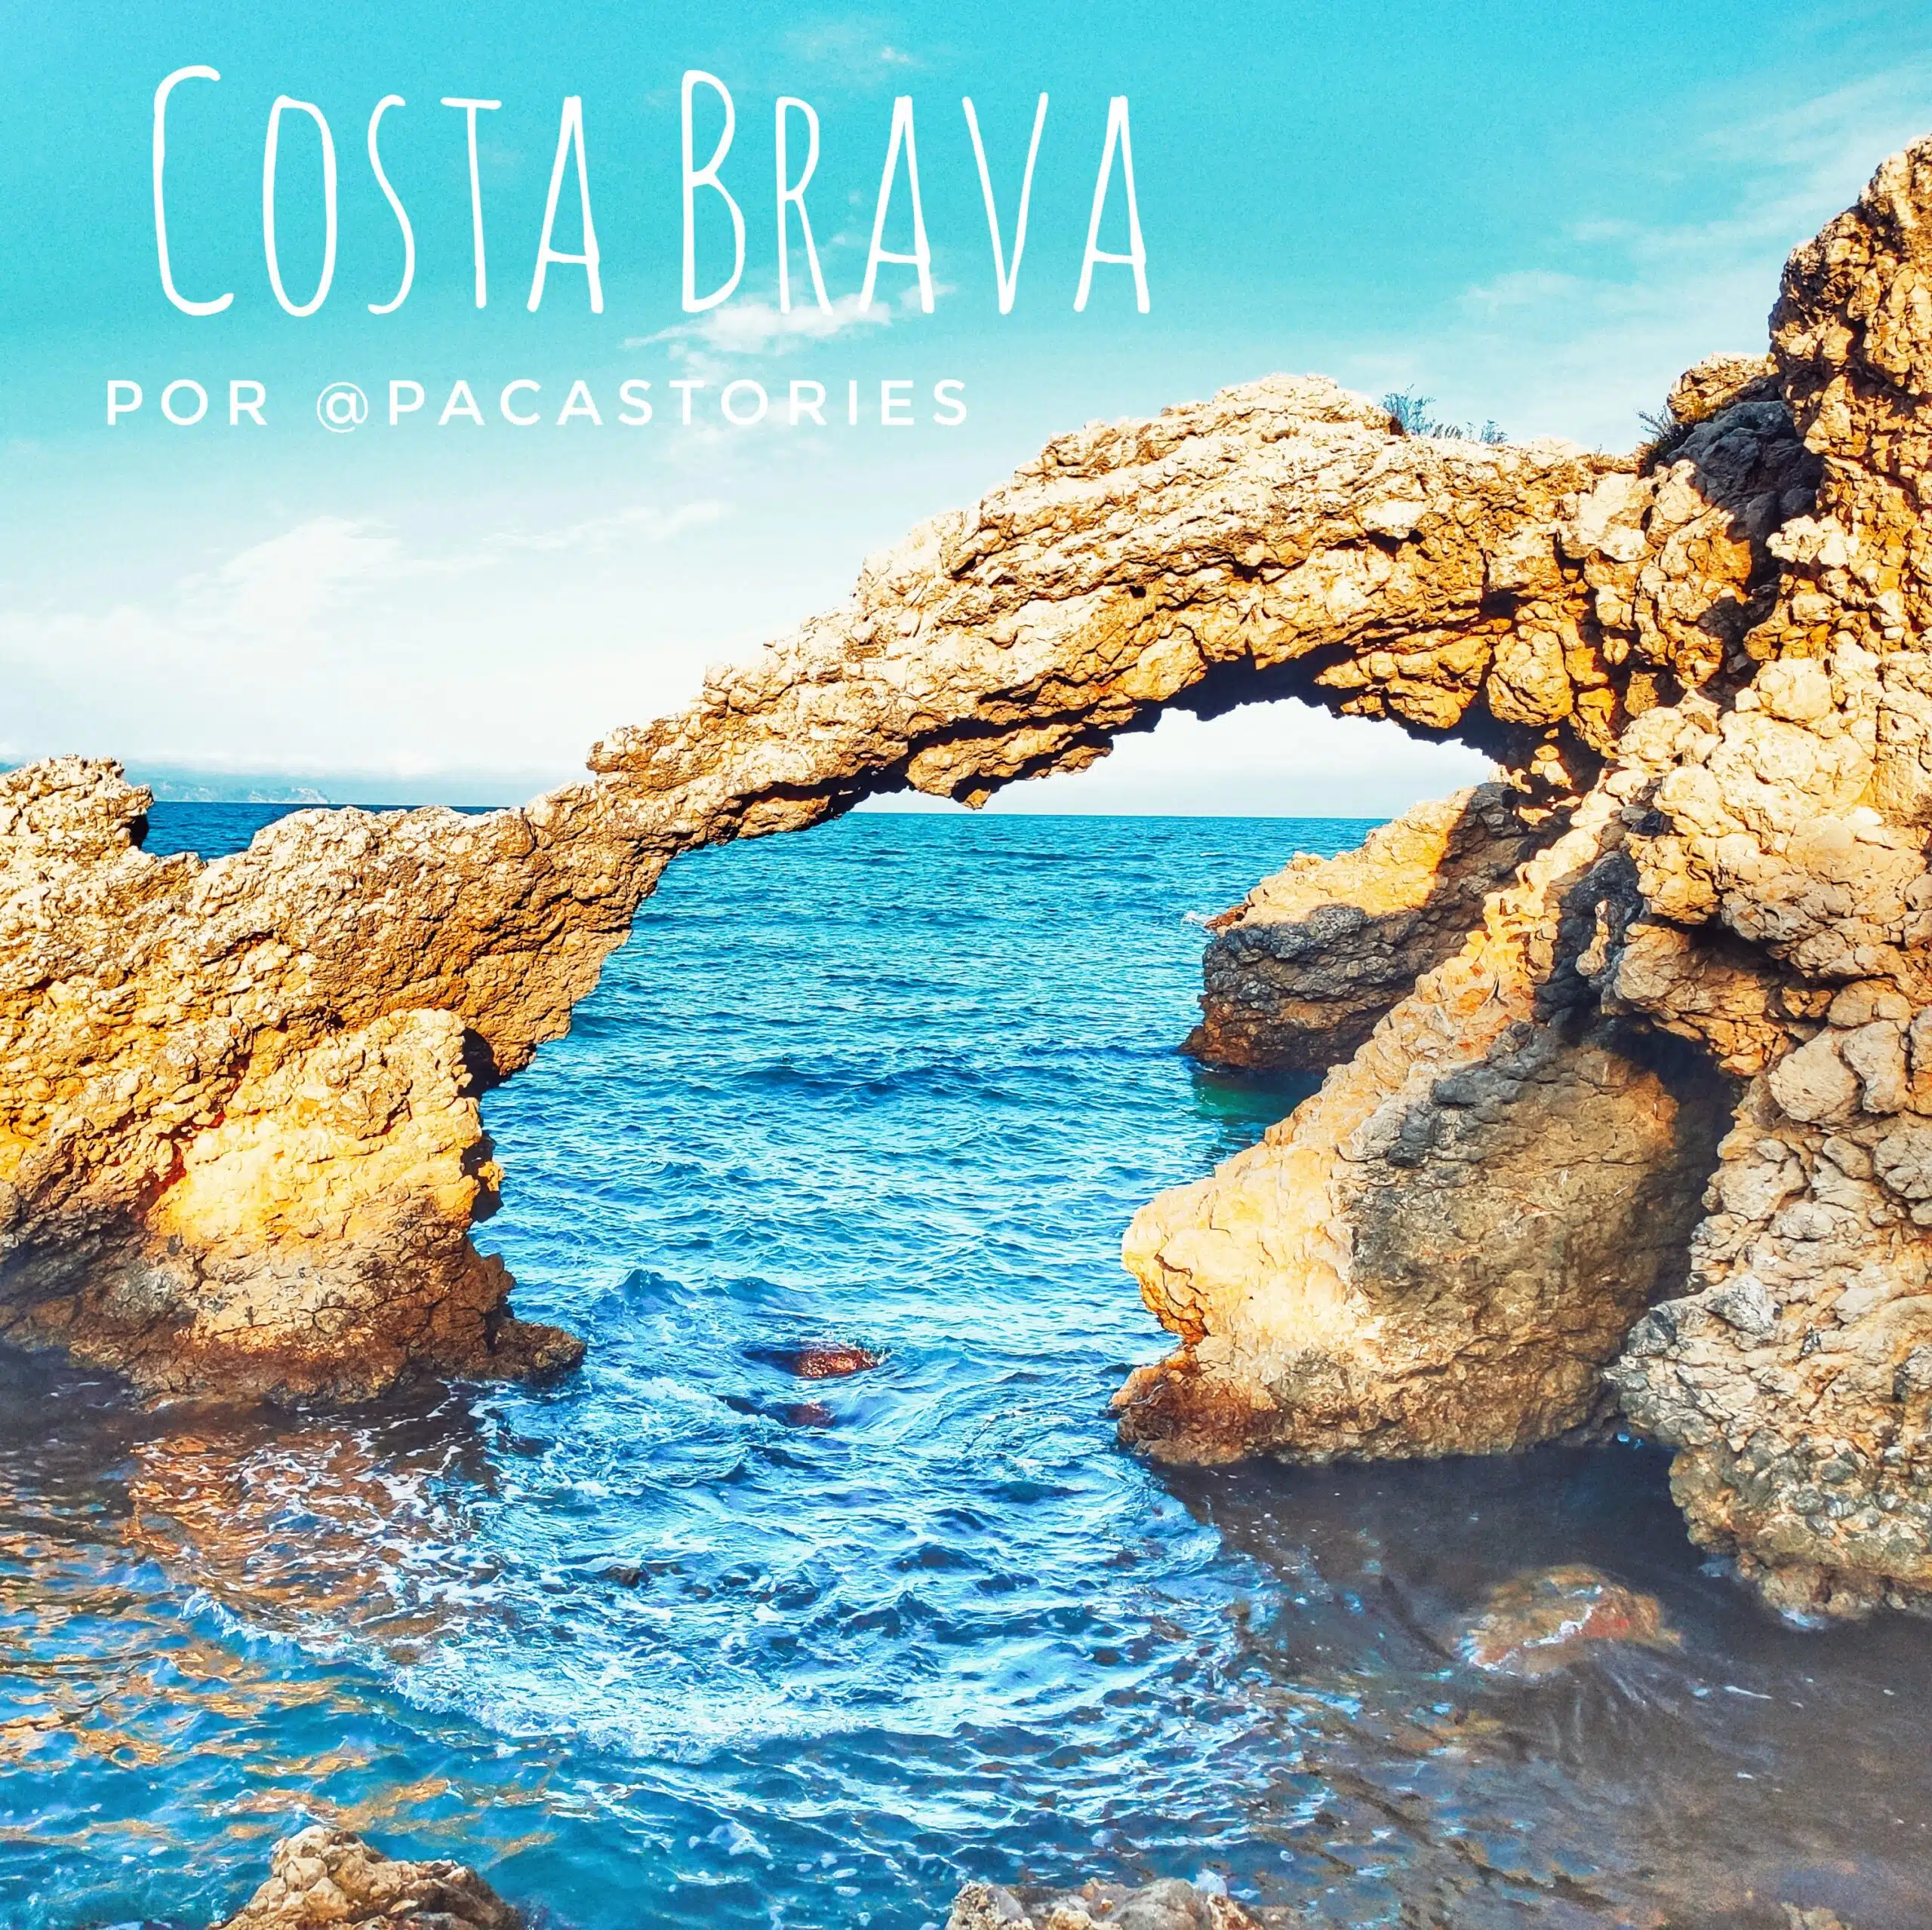 17 incredibili destinazioni per scoprire la Costa Brava in camper